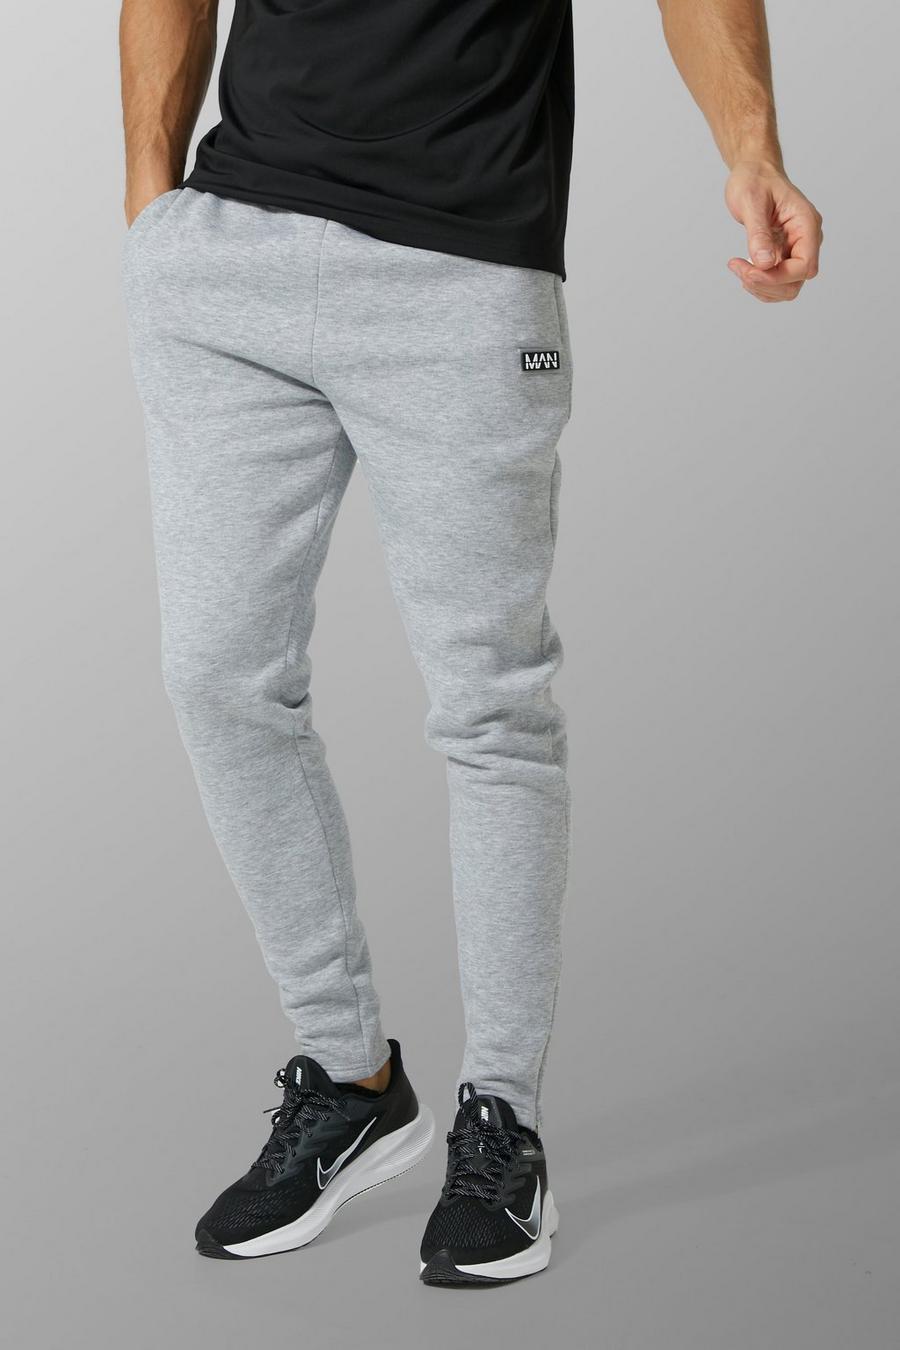 סלע אפור gris מכנסי ריצה ספורטיביים לאימונים עם כיתוב Man, לגברים גבוהים image number 1